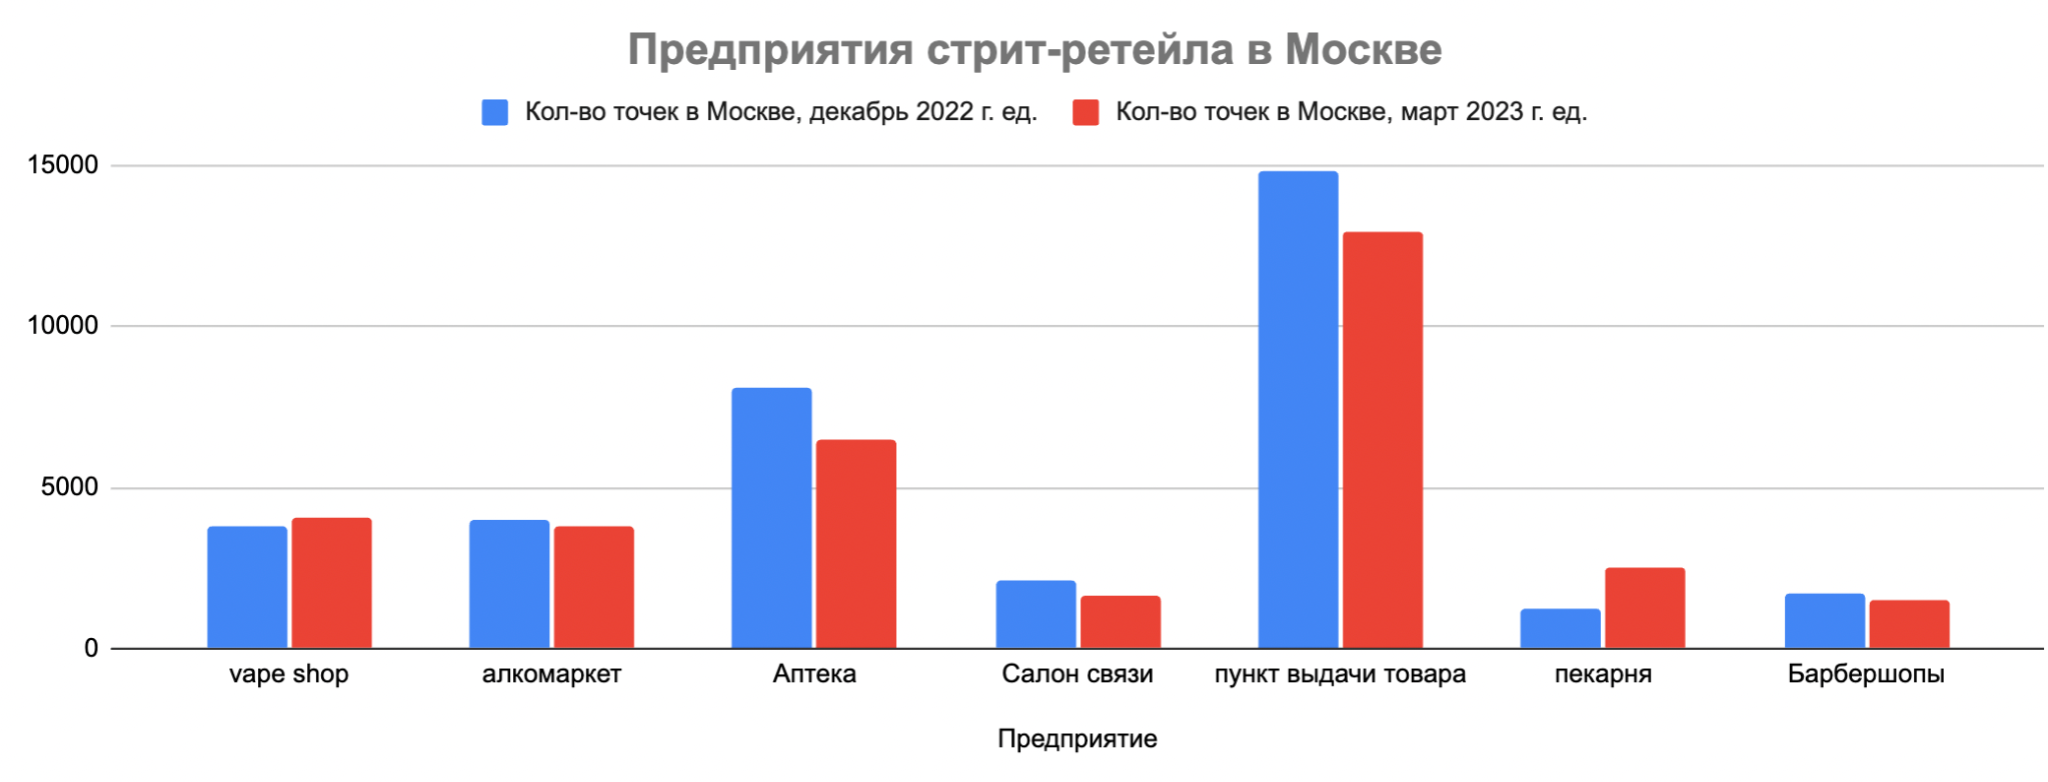 В Москве зафиксировано снижение числа салонов связи и аптек, а количество пекарен и vape shop значительно выросло